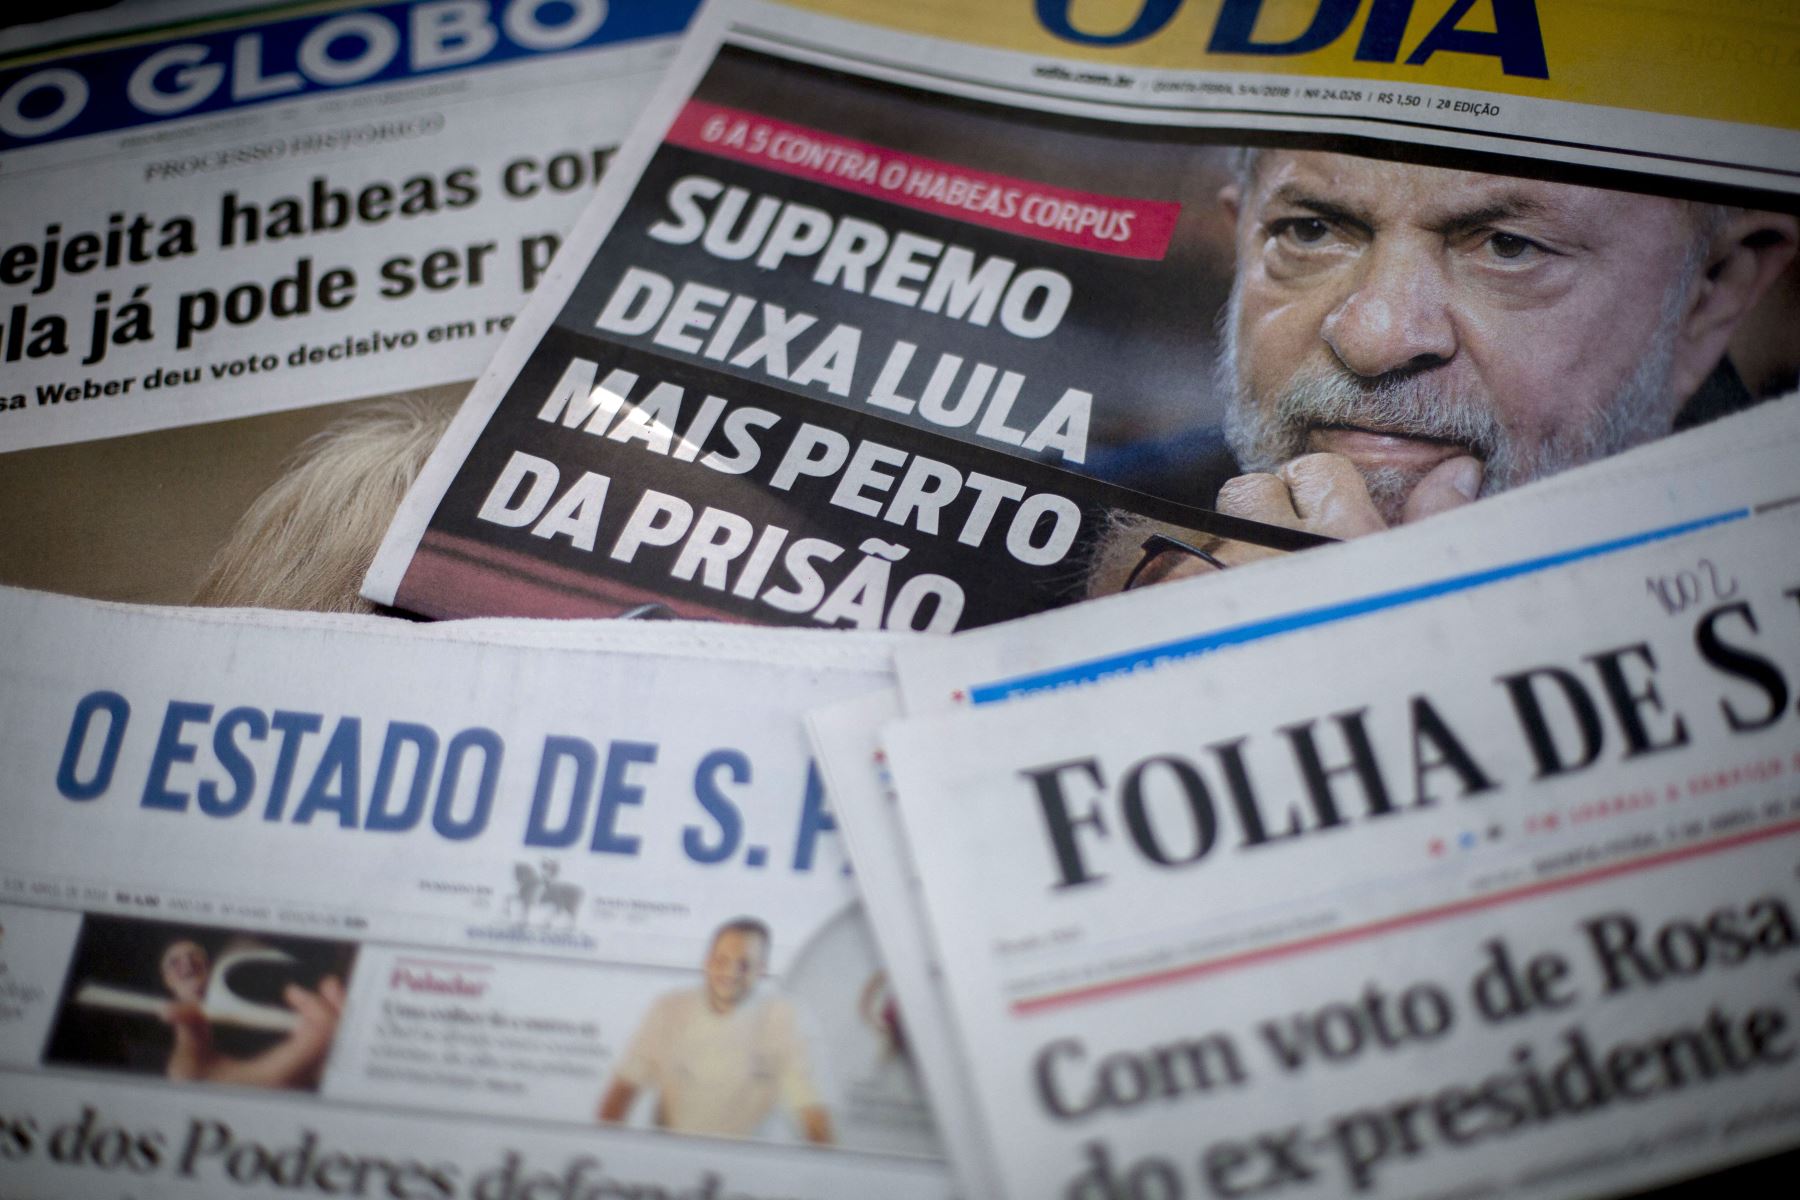 El juez del Supremo Tribunal federal (STF) Edson Fachin anula las condenas de Lula, por considerar que el tribunal de Curitiba no tenía competencia para juzgarlo. Foto: AFP